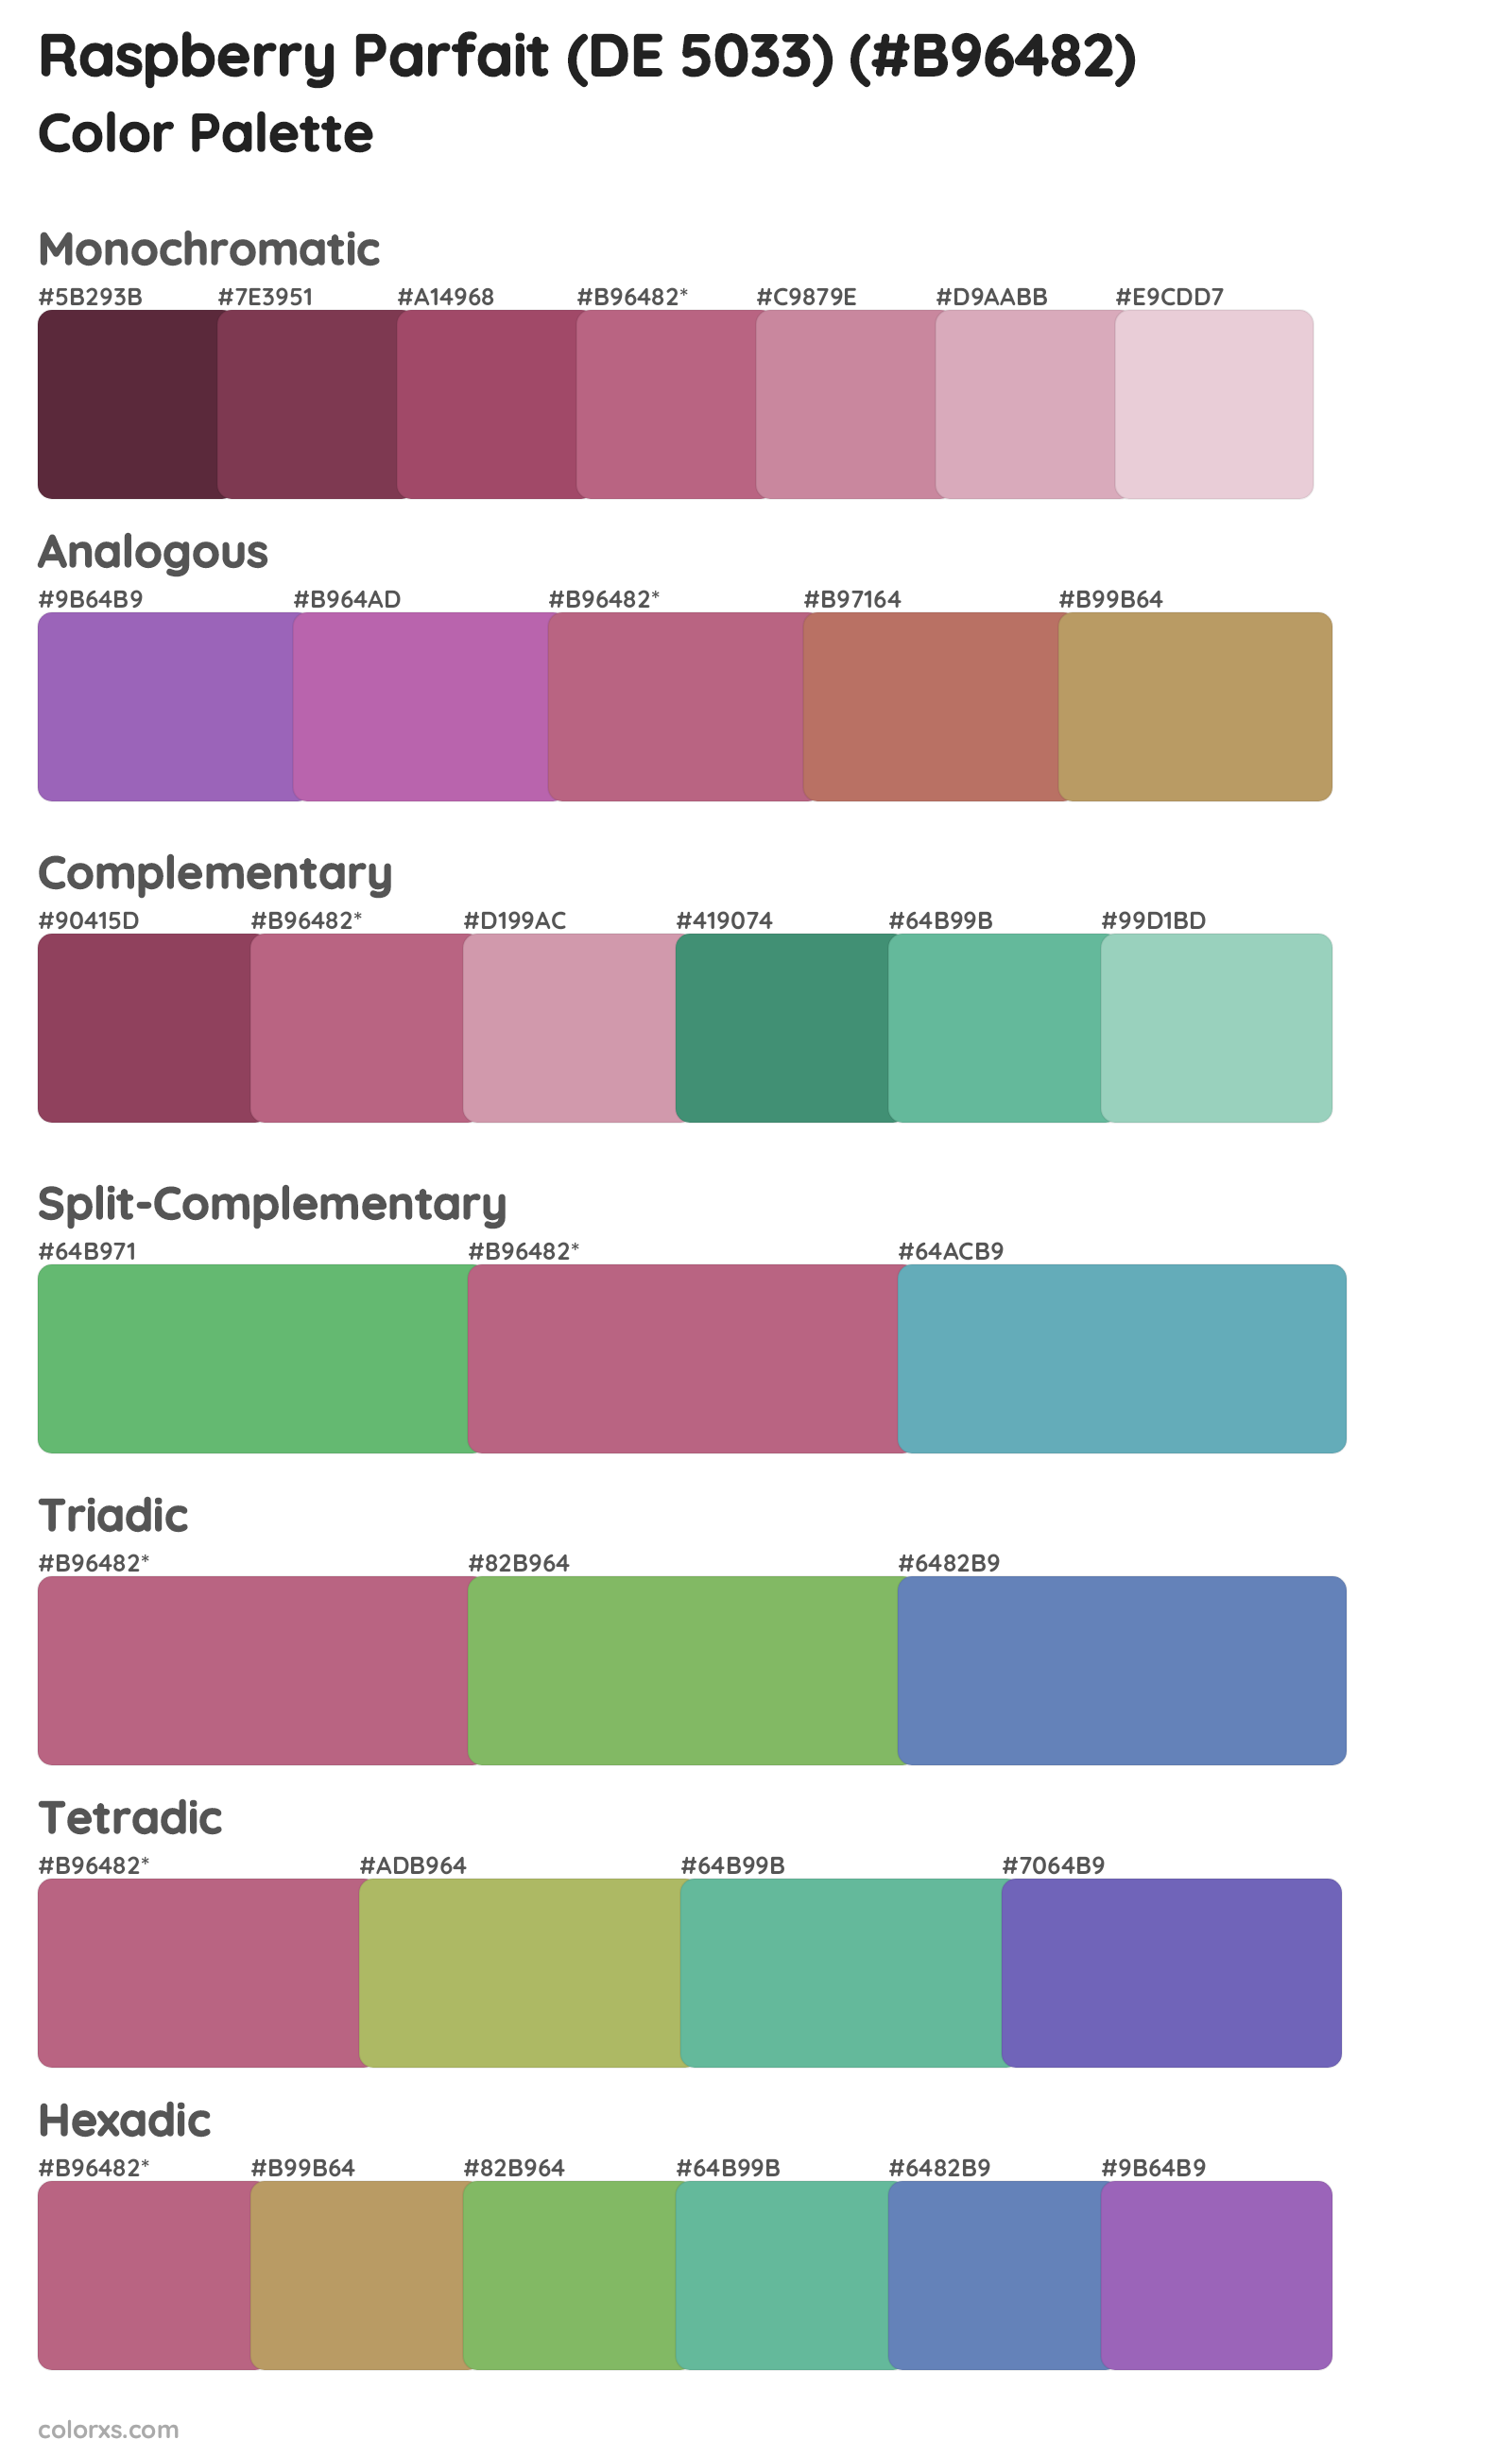 Raspberry Parfait (DE 5033) Color Scheme Palettes